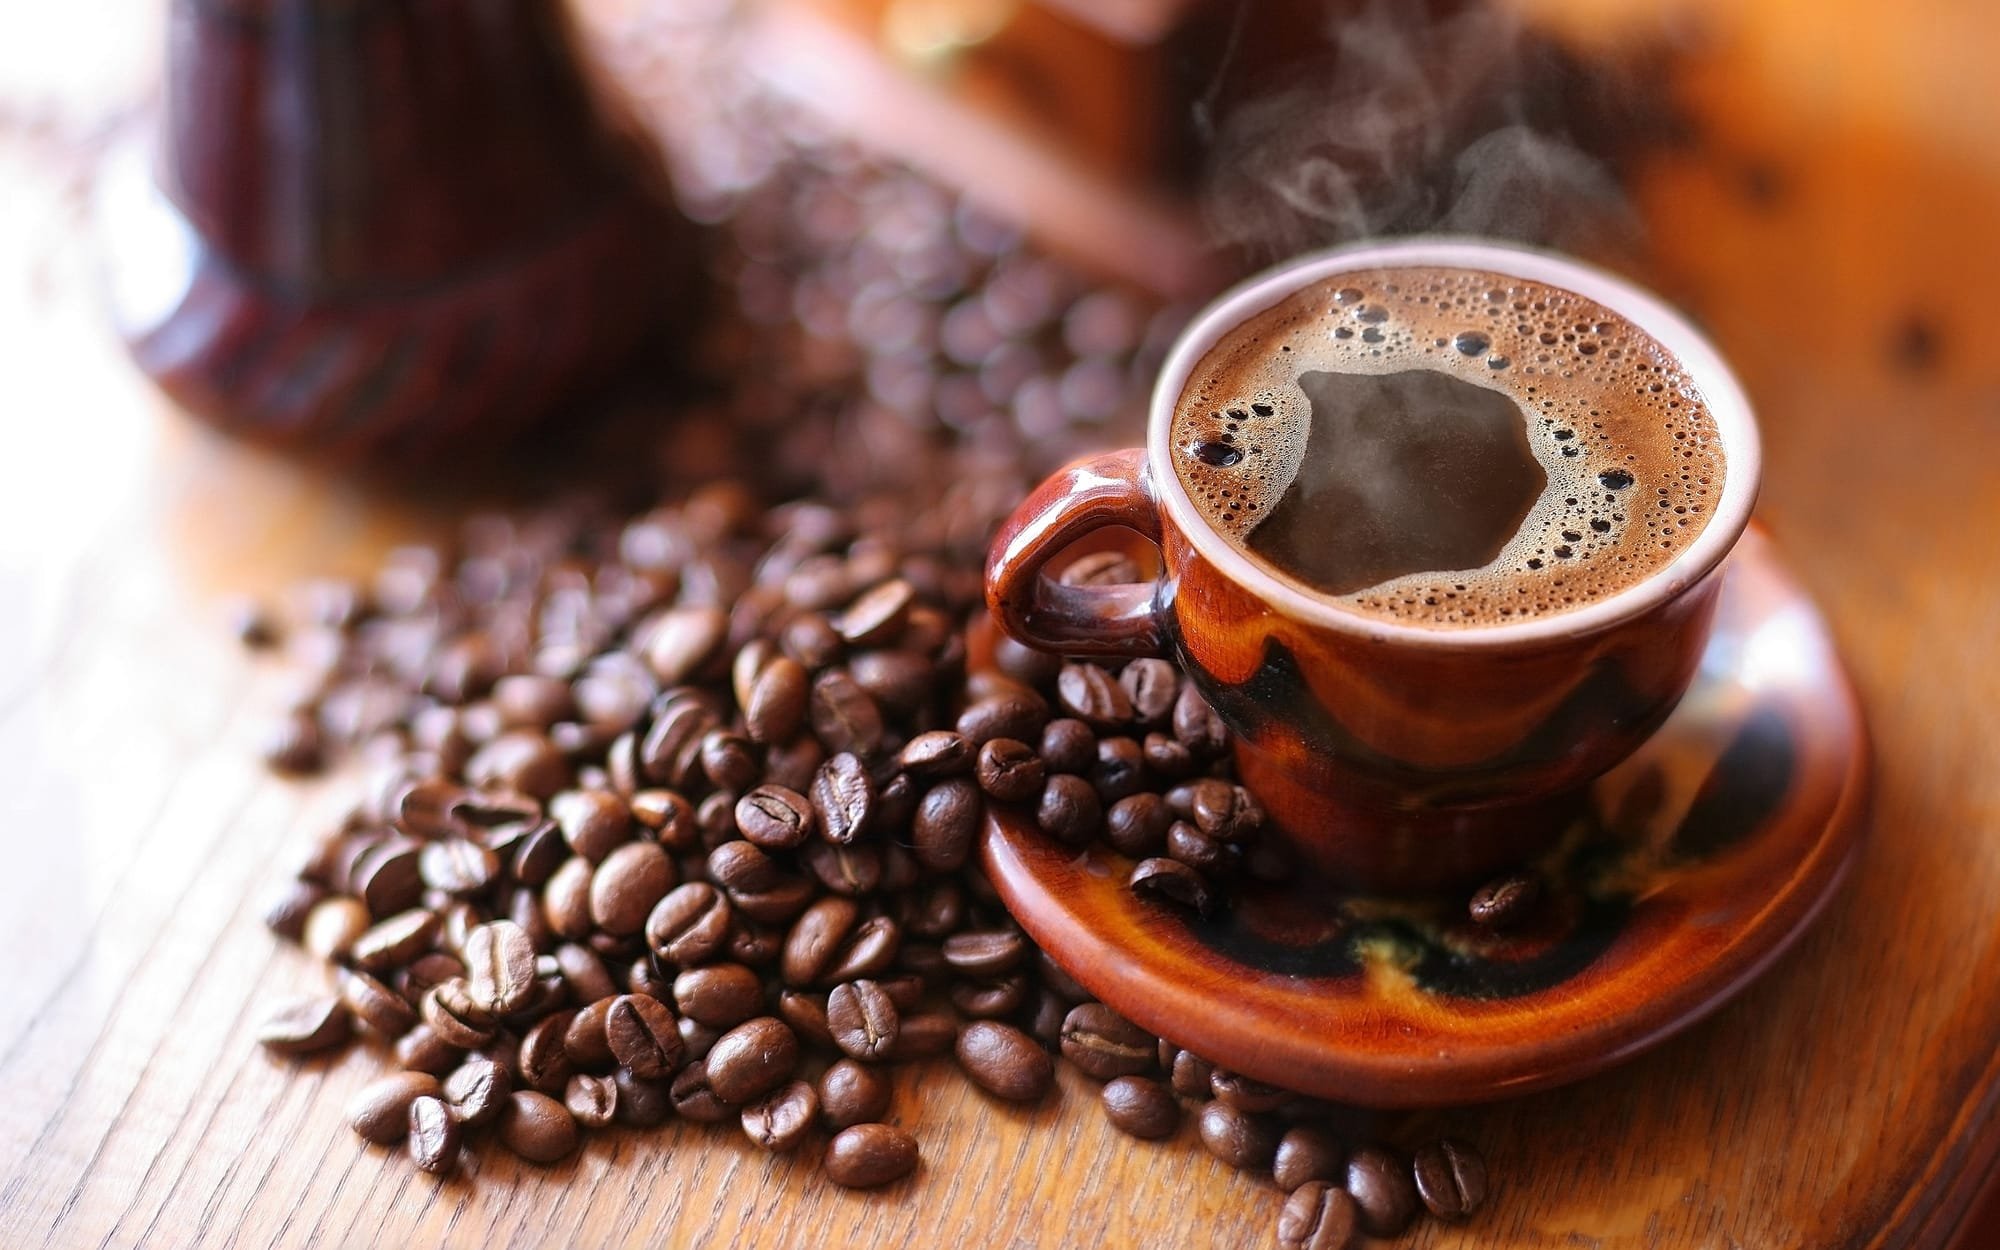 دراسة تكشف ما يفعله فنجان القهوة الصباحي بقدرة الجسم على حرق الدهون